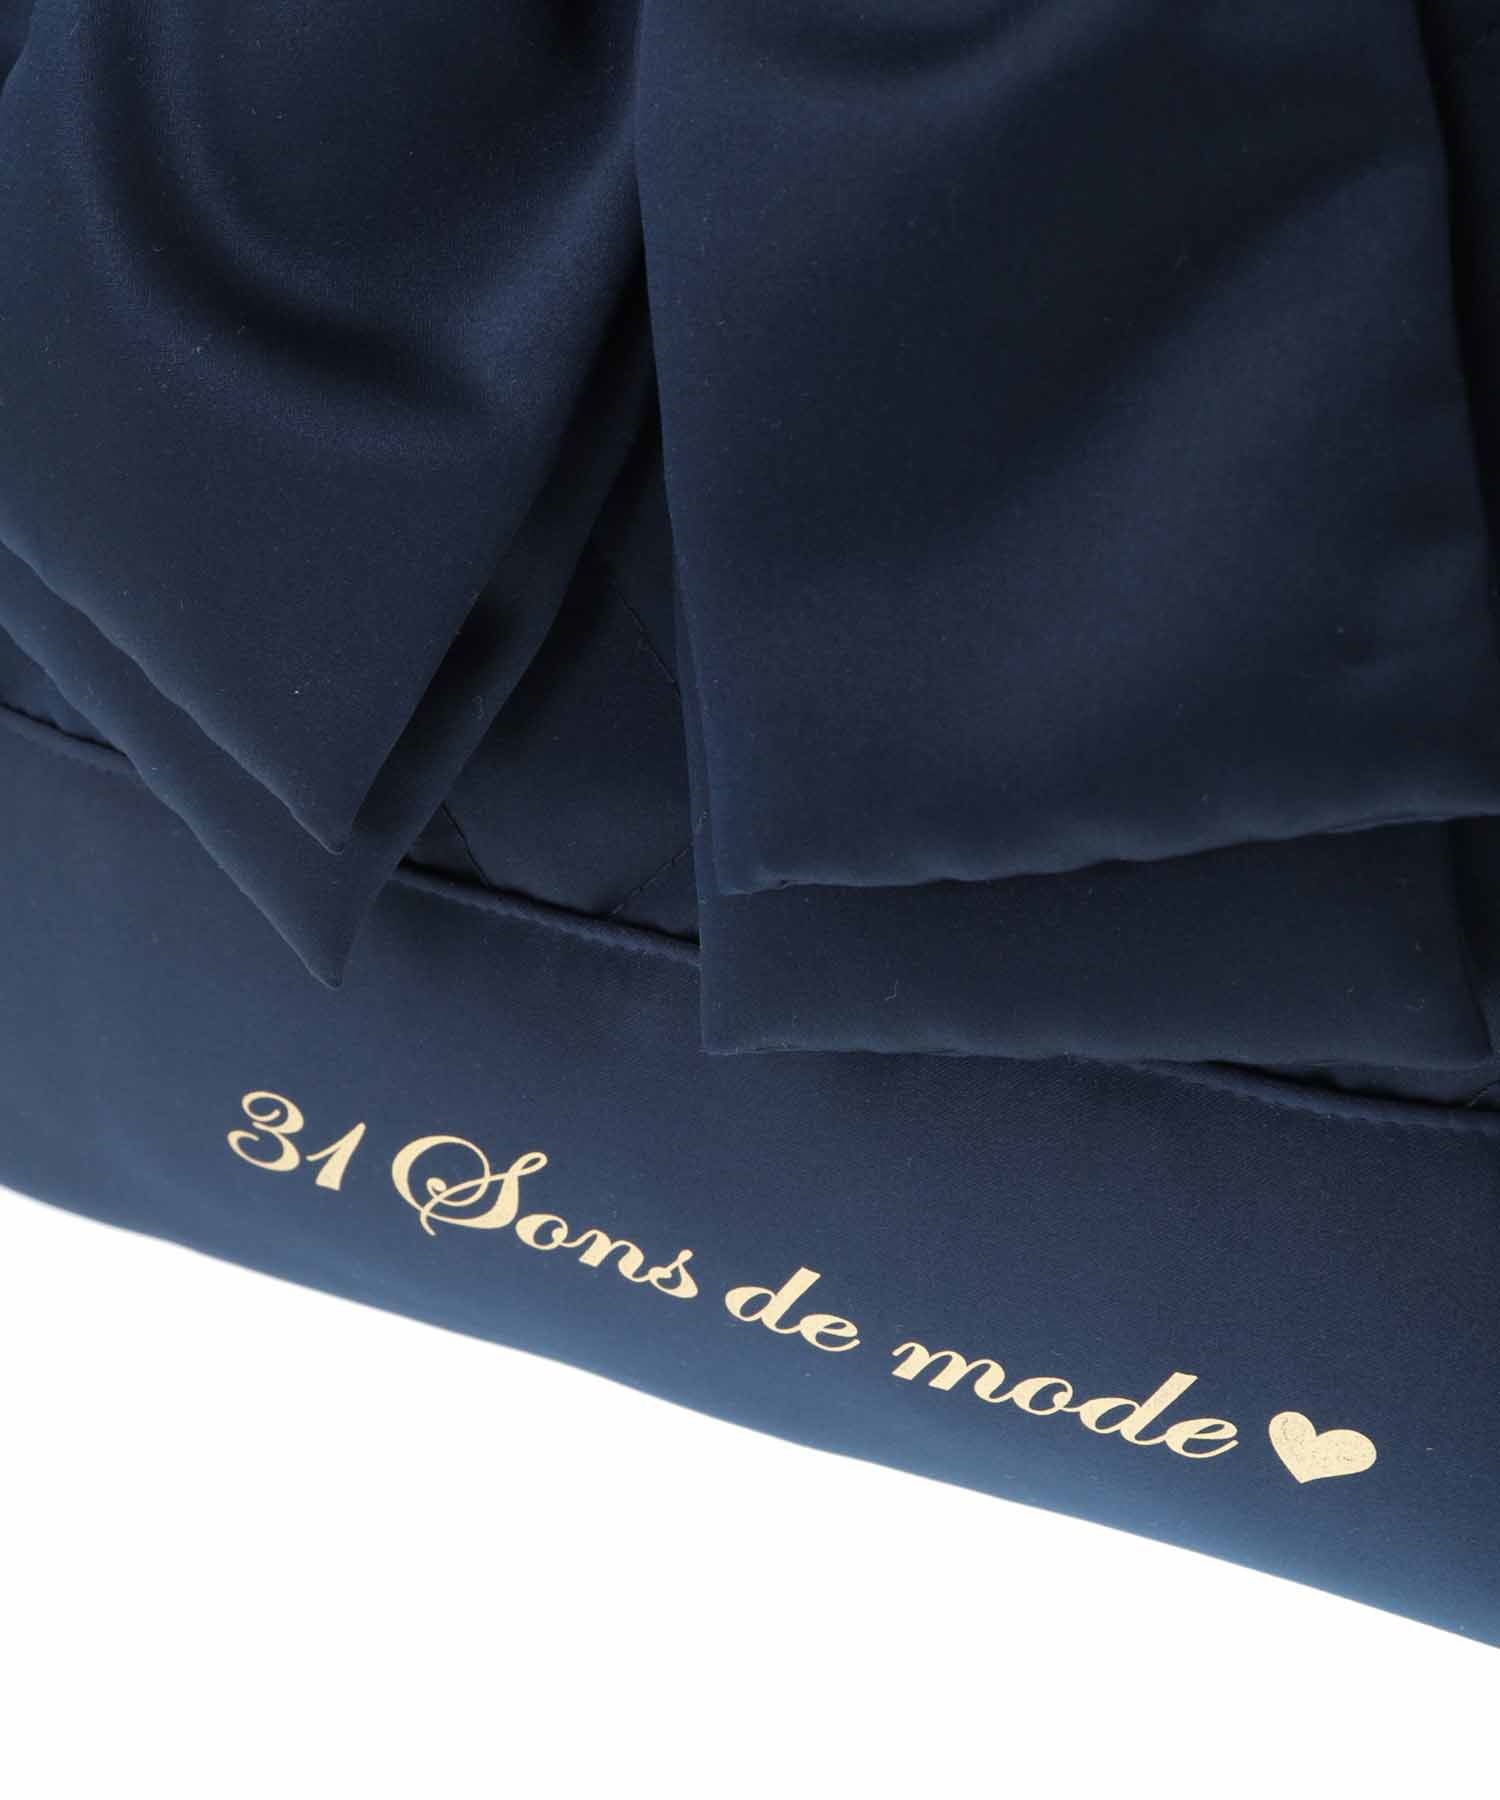 ２０２４年 新春福袋 | 31 Sons de mode(トランテアン ソン ドゥ 